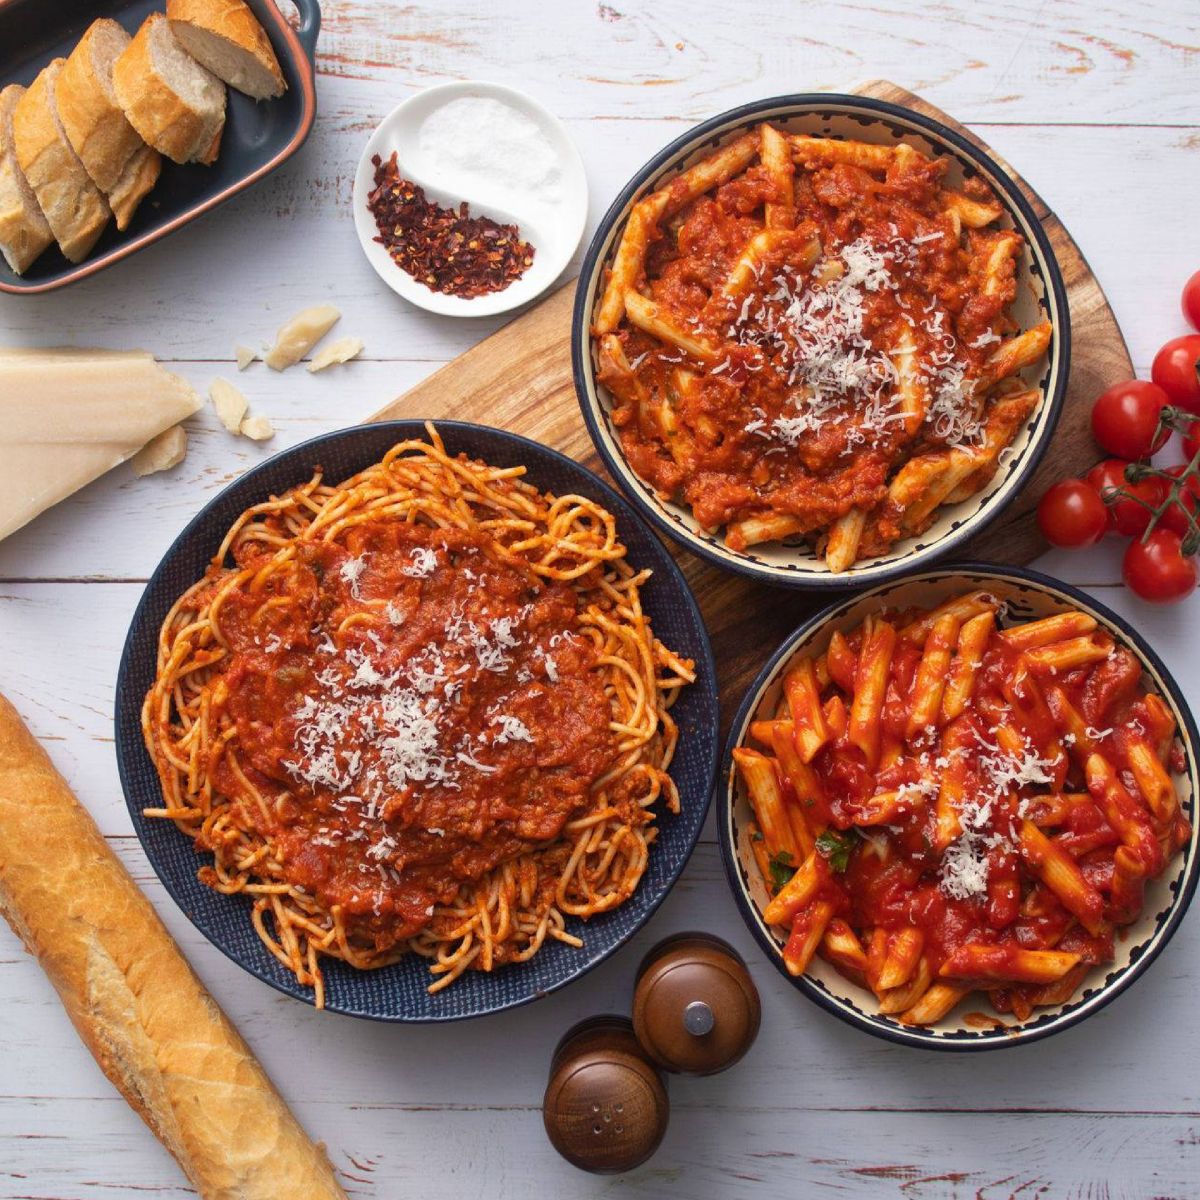 La comida italiana se caracteriza por se calórica y abundante, aprende a tomar las mejores desiciones.